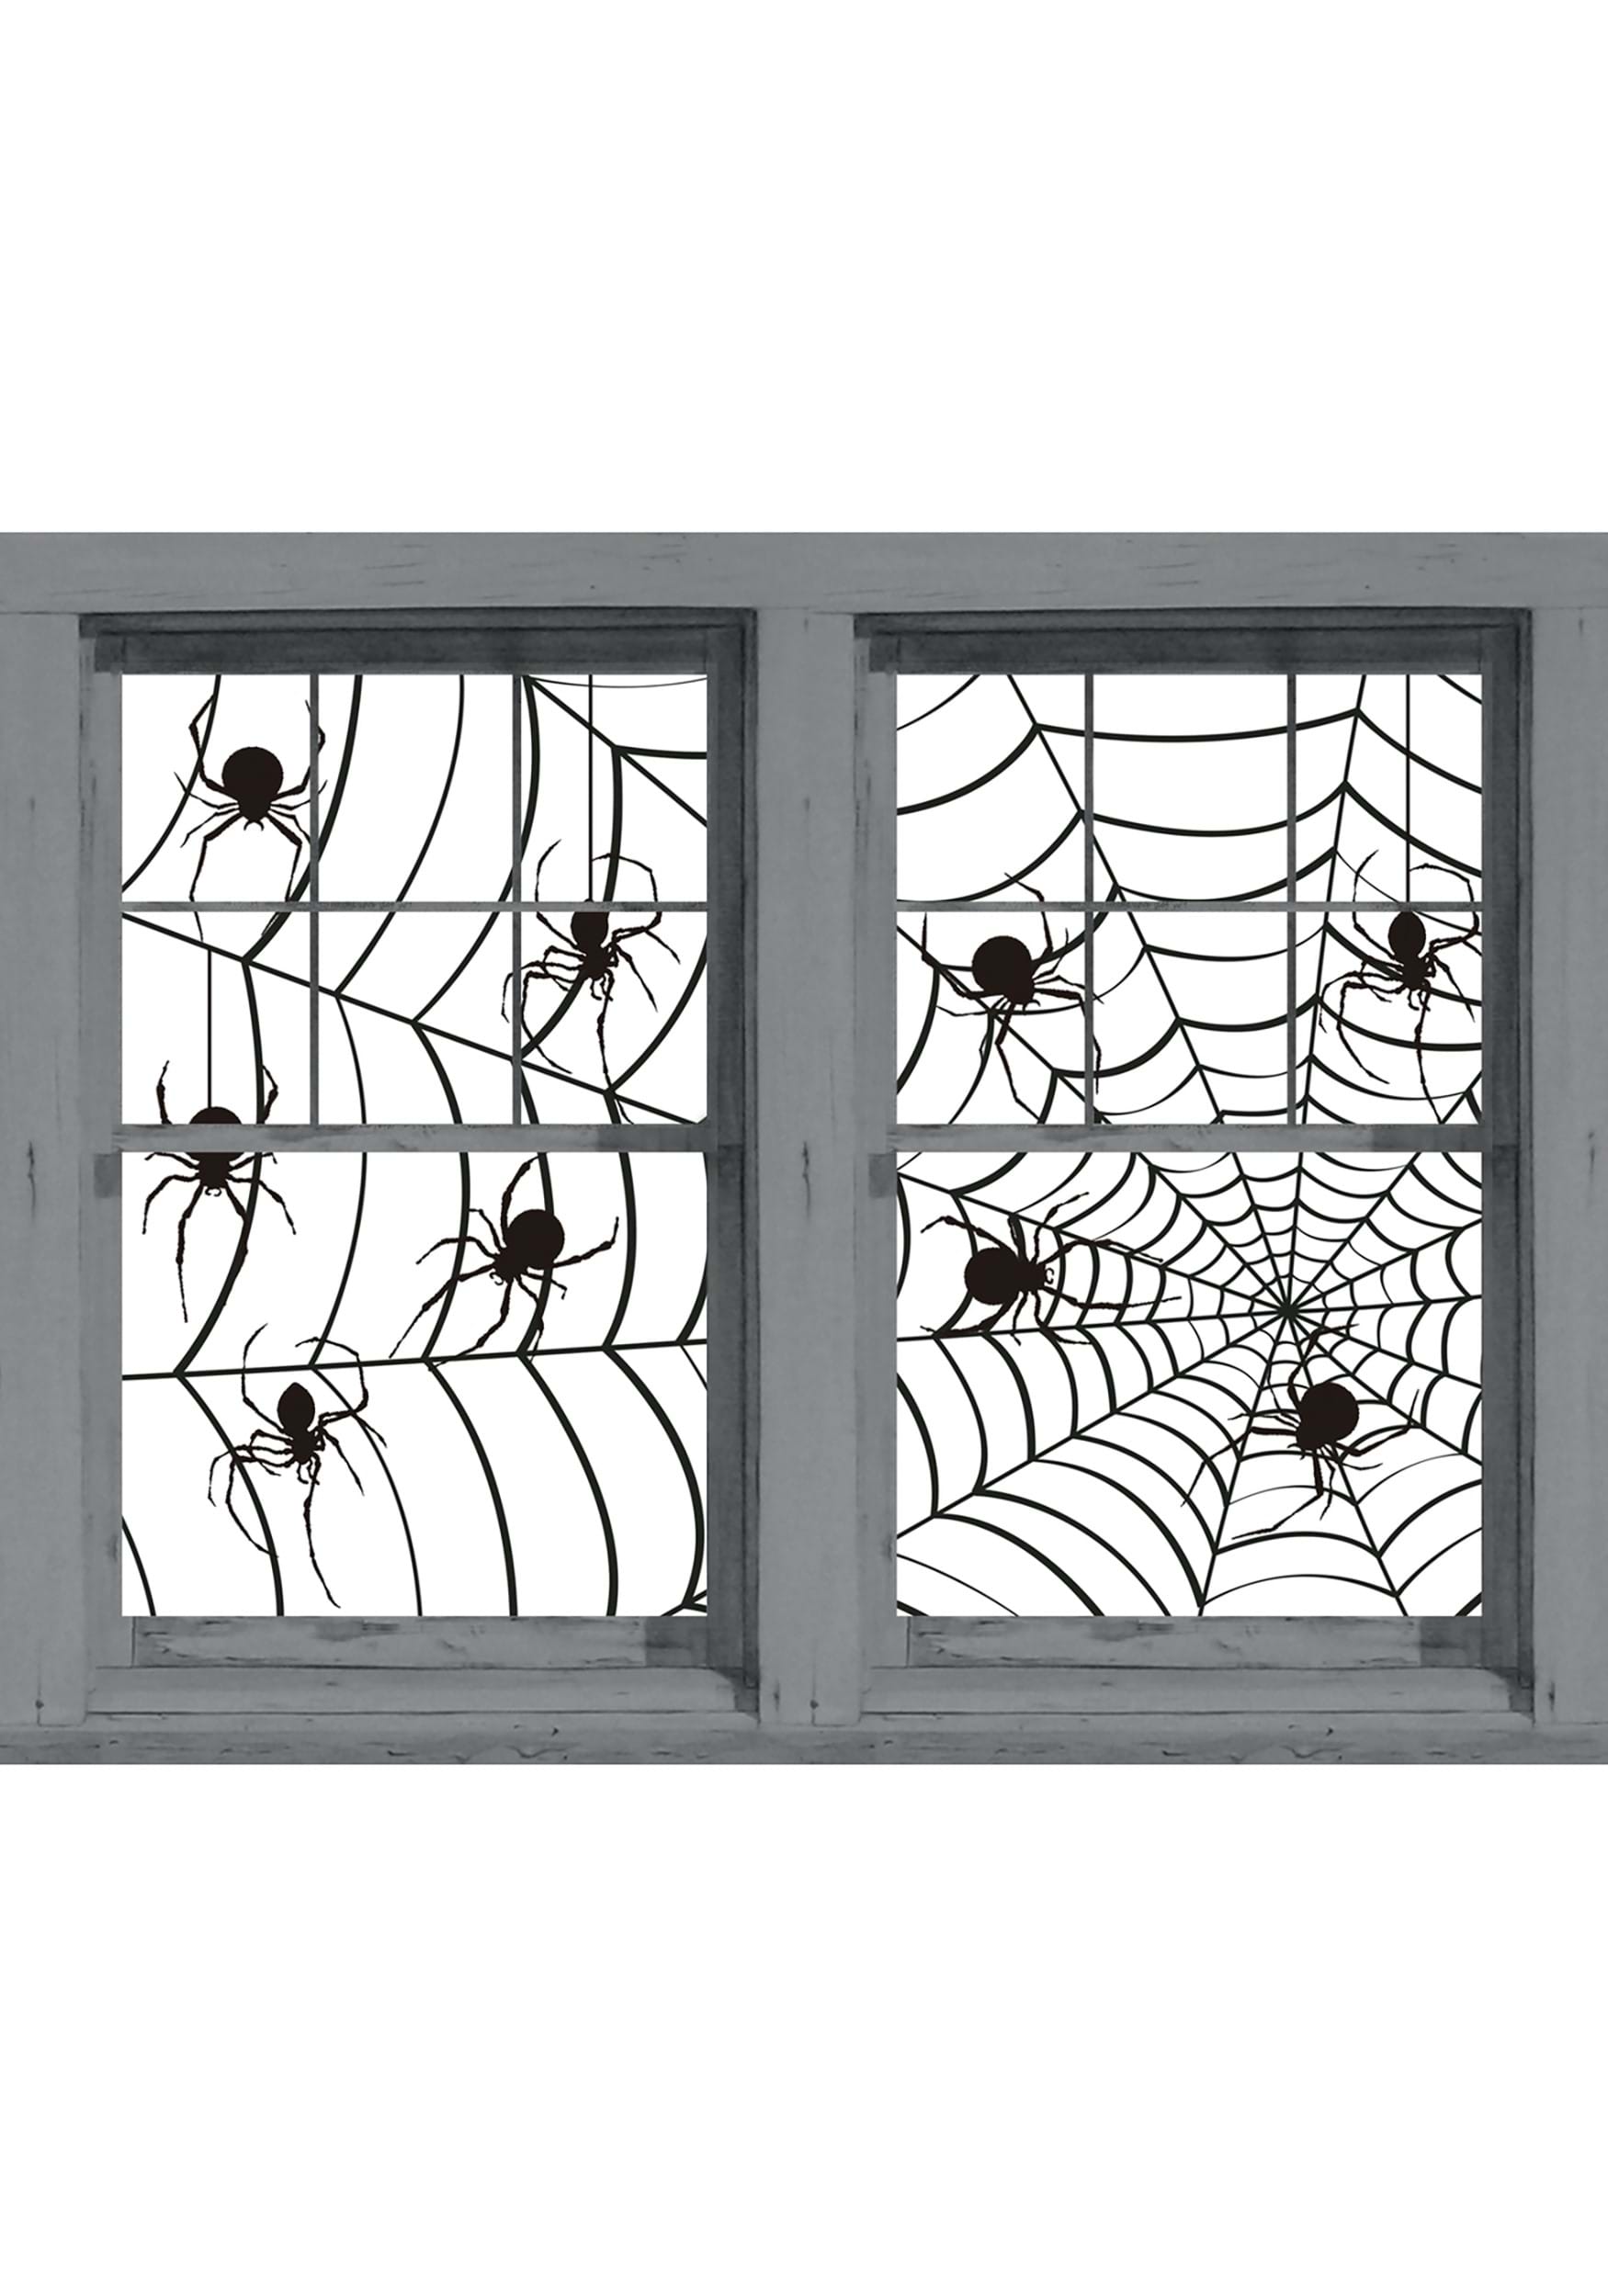 Spider Stickers & Webs Make A Scene